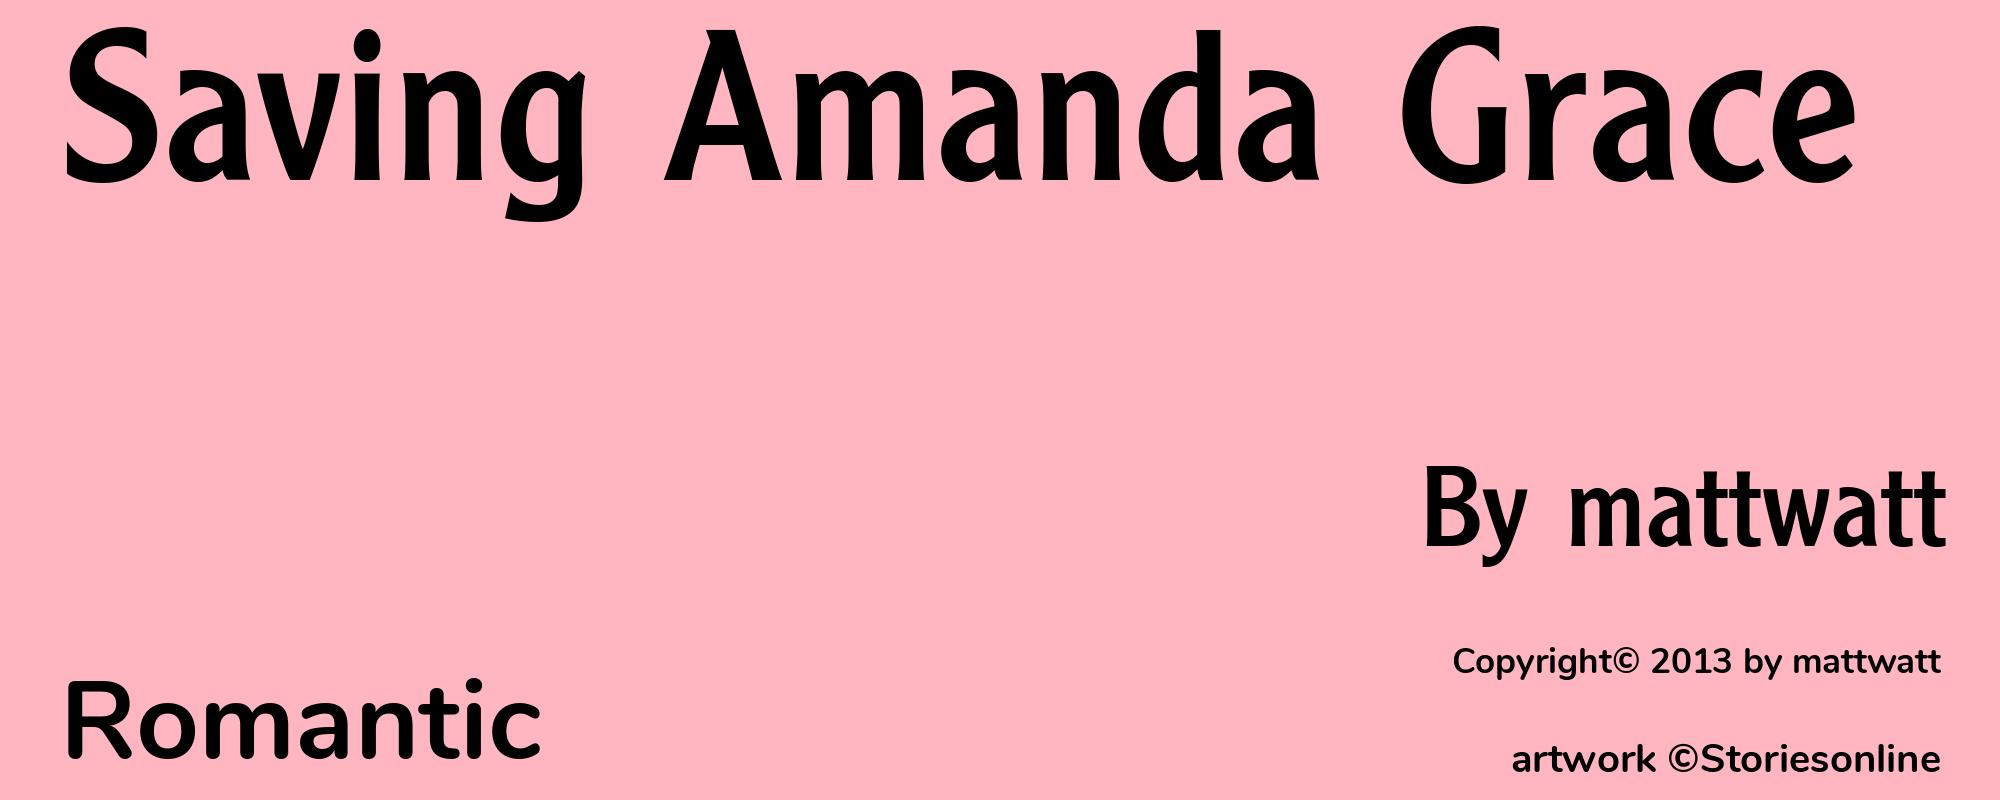 Saving Amanda Grace - Cover